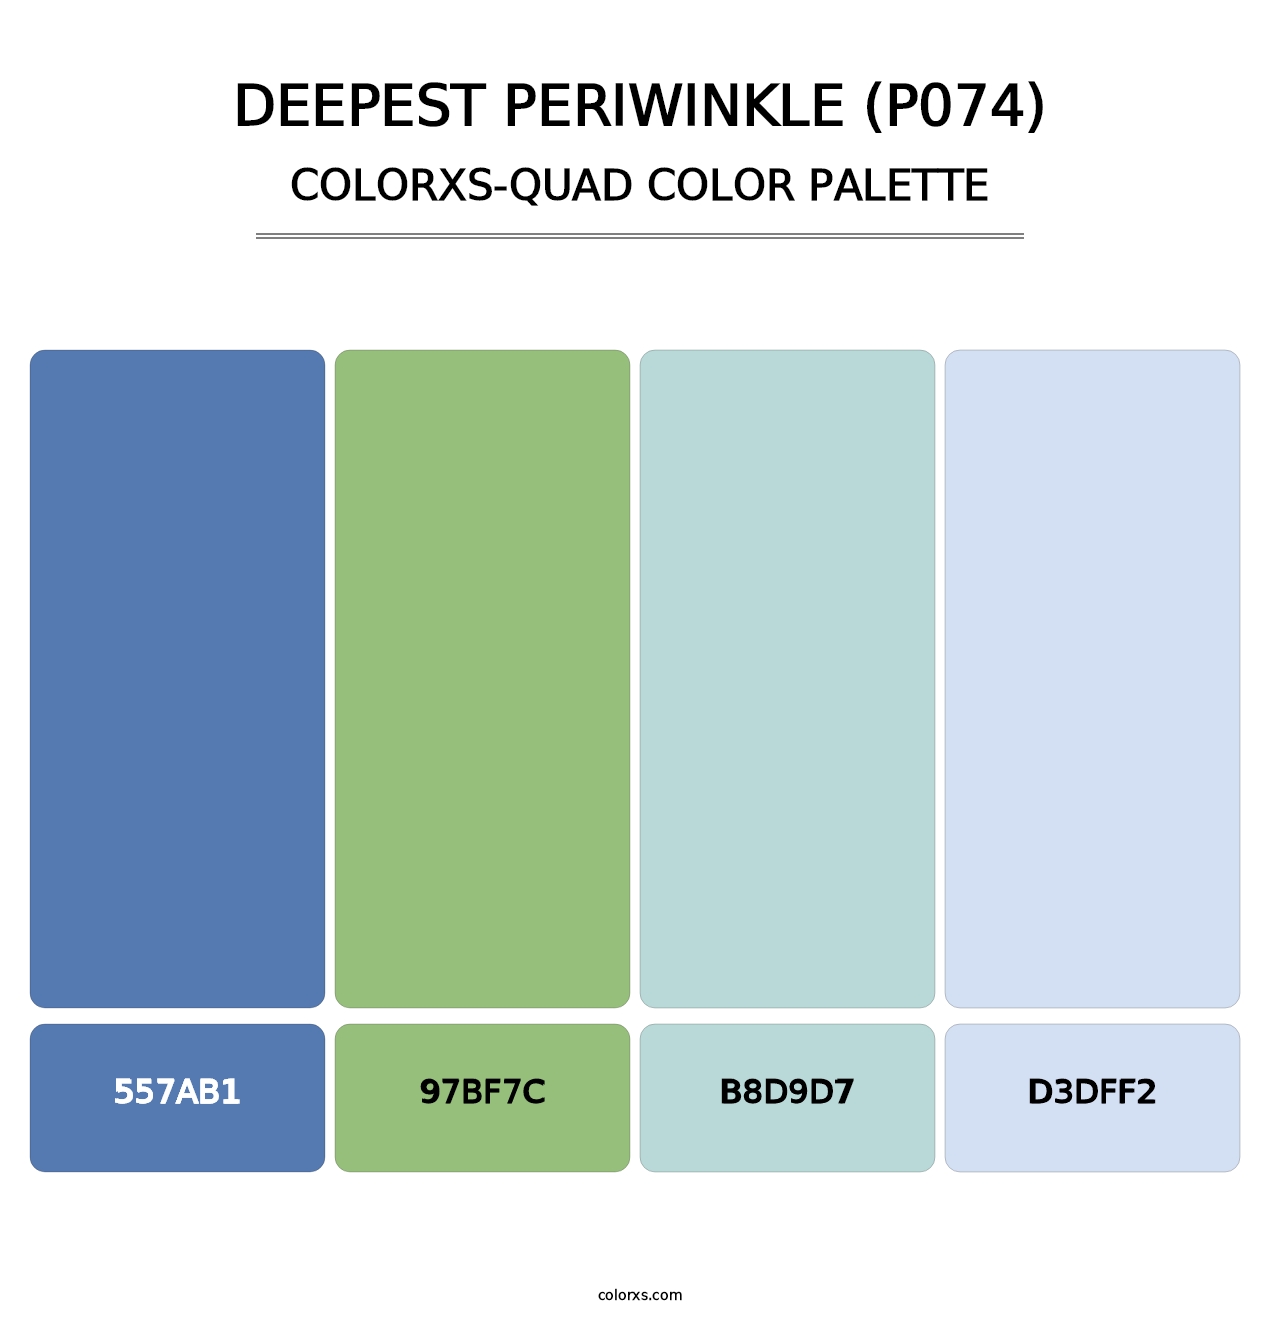 Deepest Periwinkle (P074) - Colorxs Quad Palette